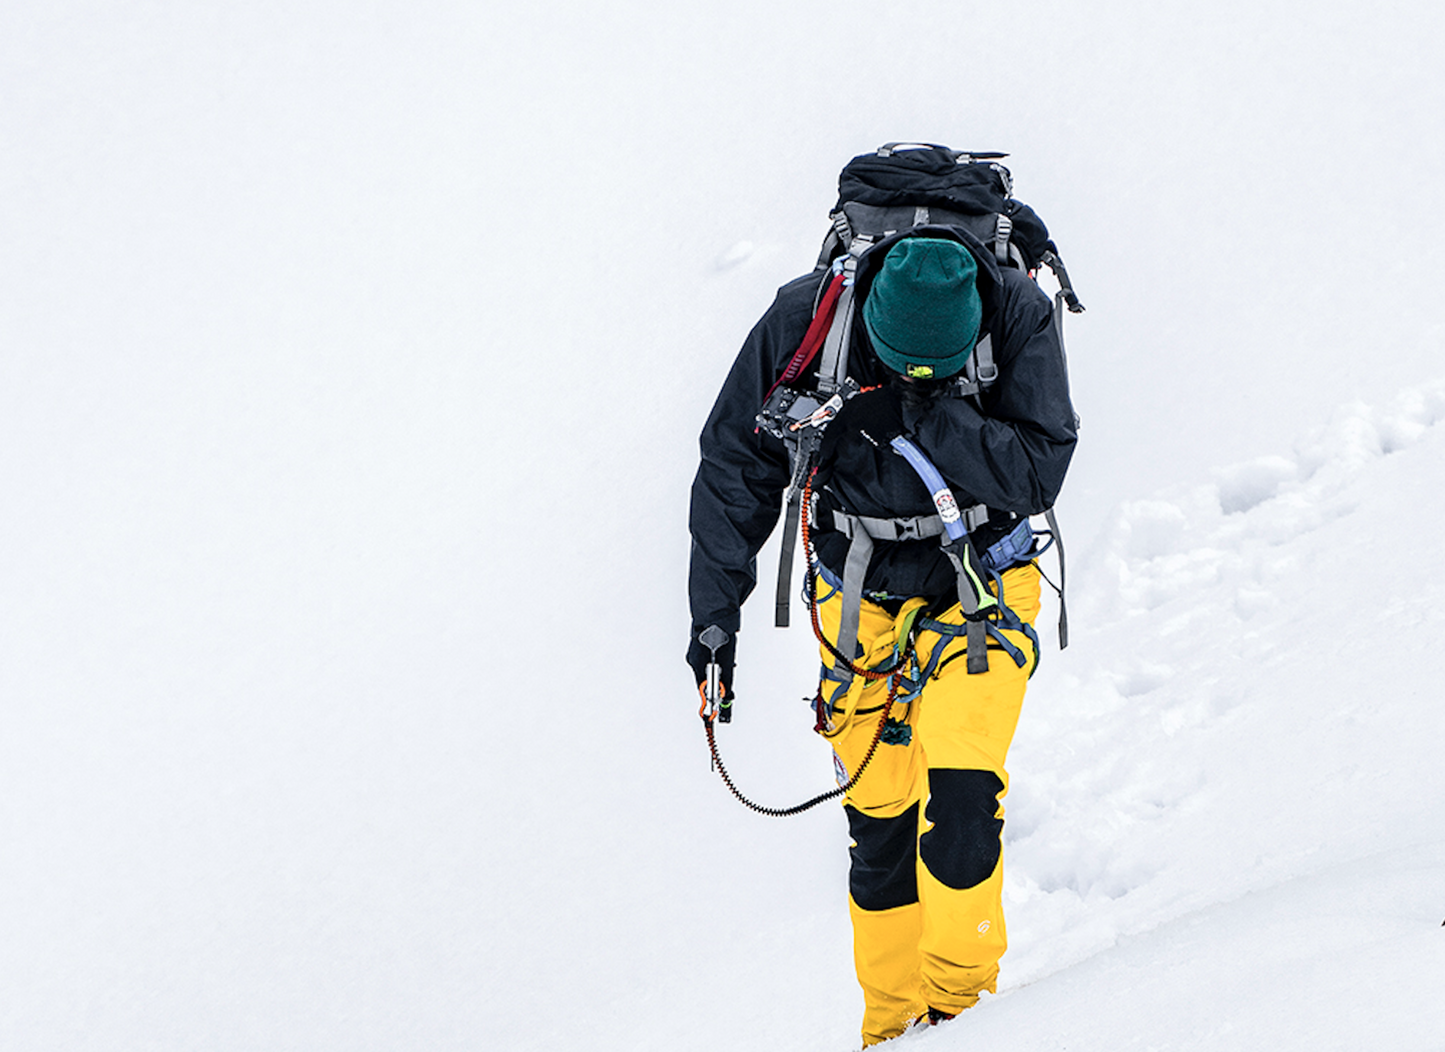 Nevado | Ski & Snow Socks